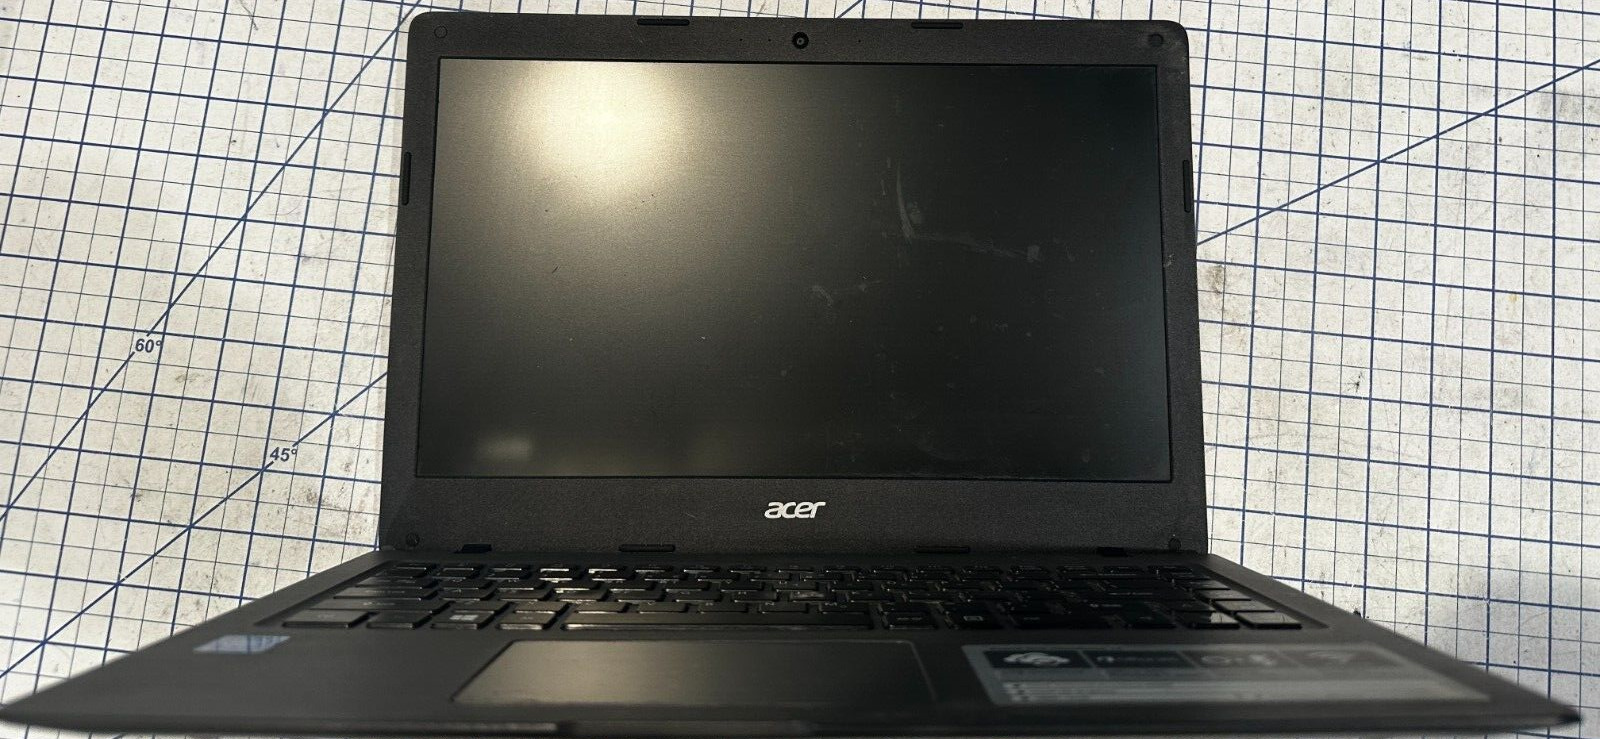 Acer - Laptop - Model: N15V2 - Gray - 11.6\